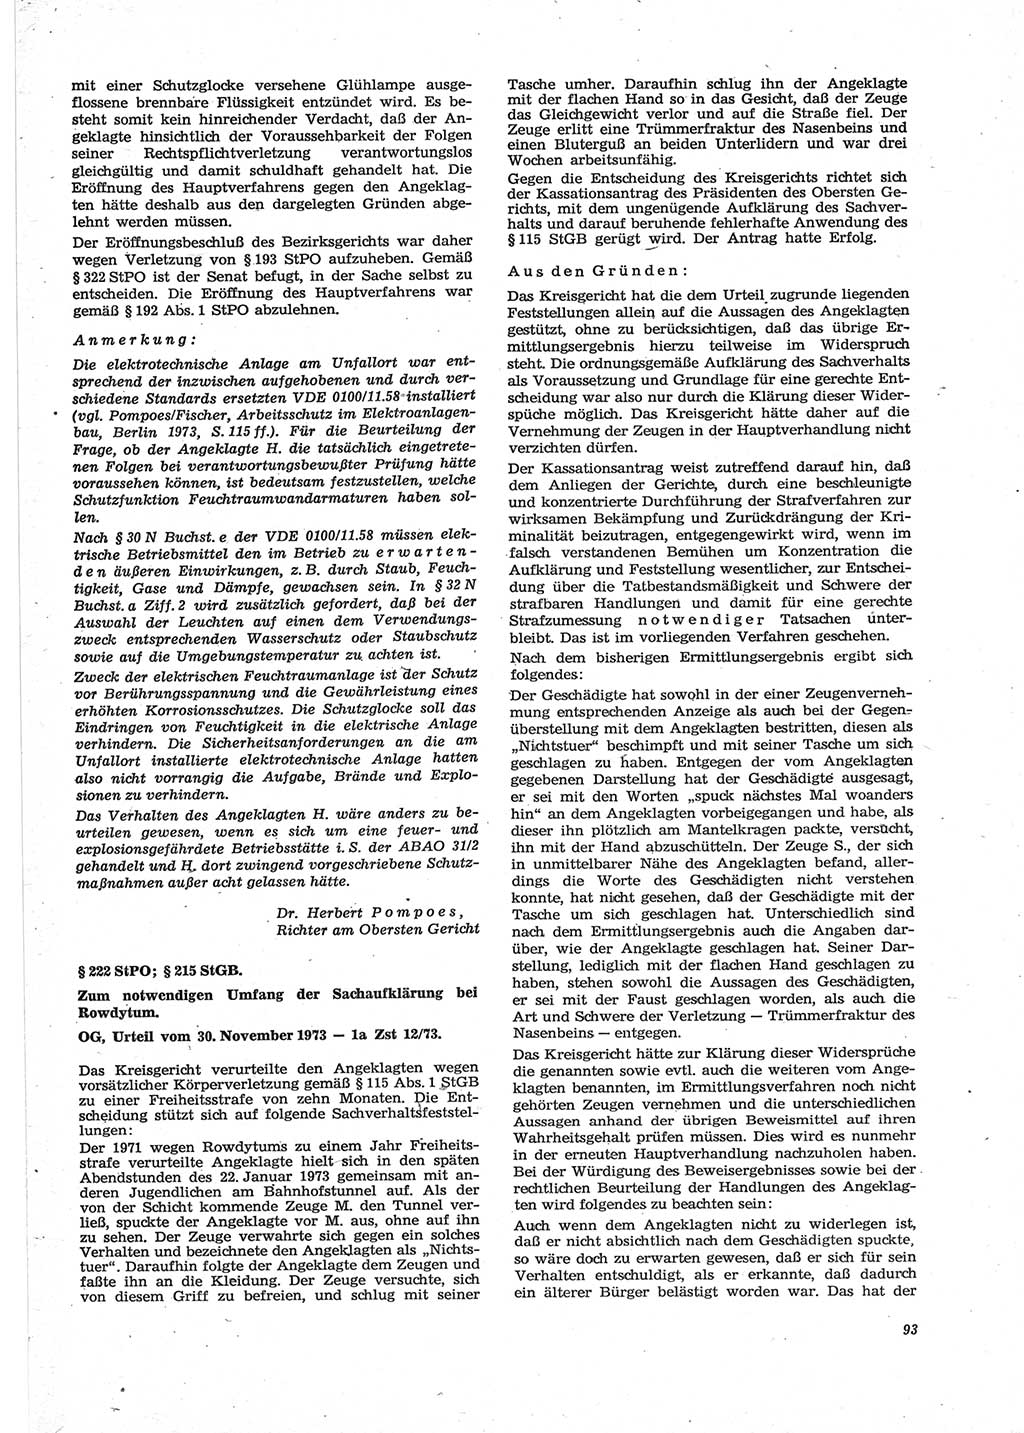 Neue Justiz (NJ), Zeitschrift für Recht und Rechtswissenschaft [Deutsche Demokratische Republik (DDR)], 28. Jahrgang 1974, Seite 93 (NJ DDR 1974, S. 93)